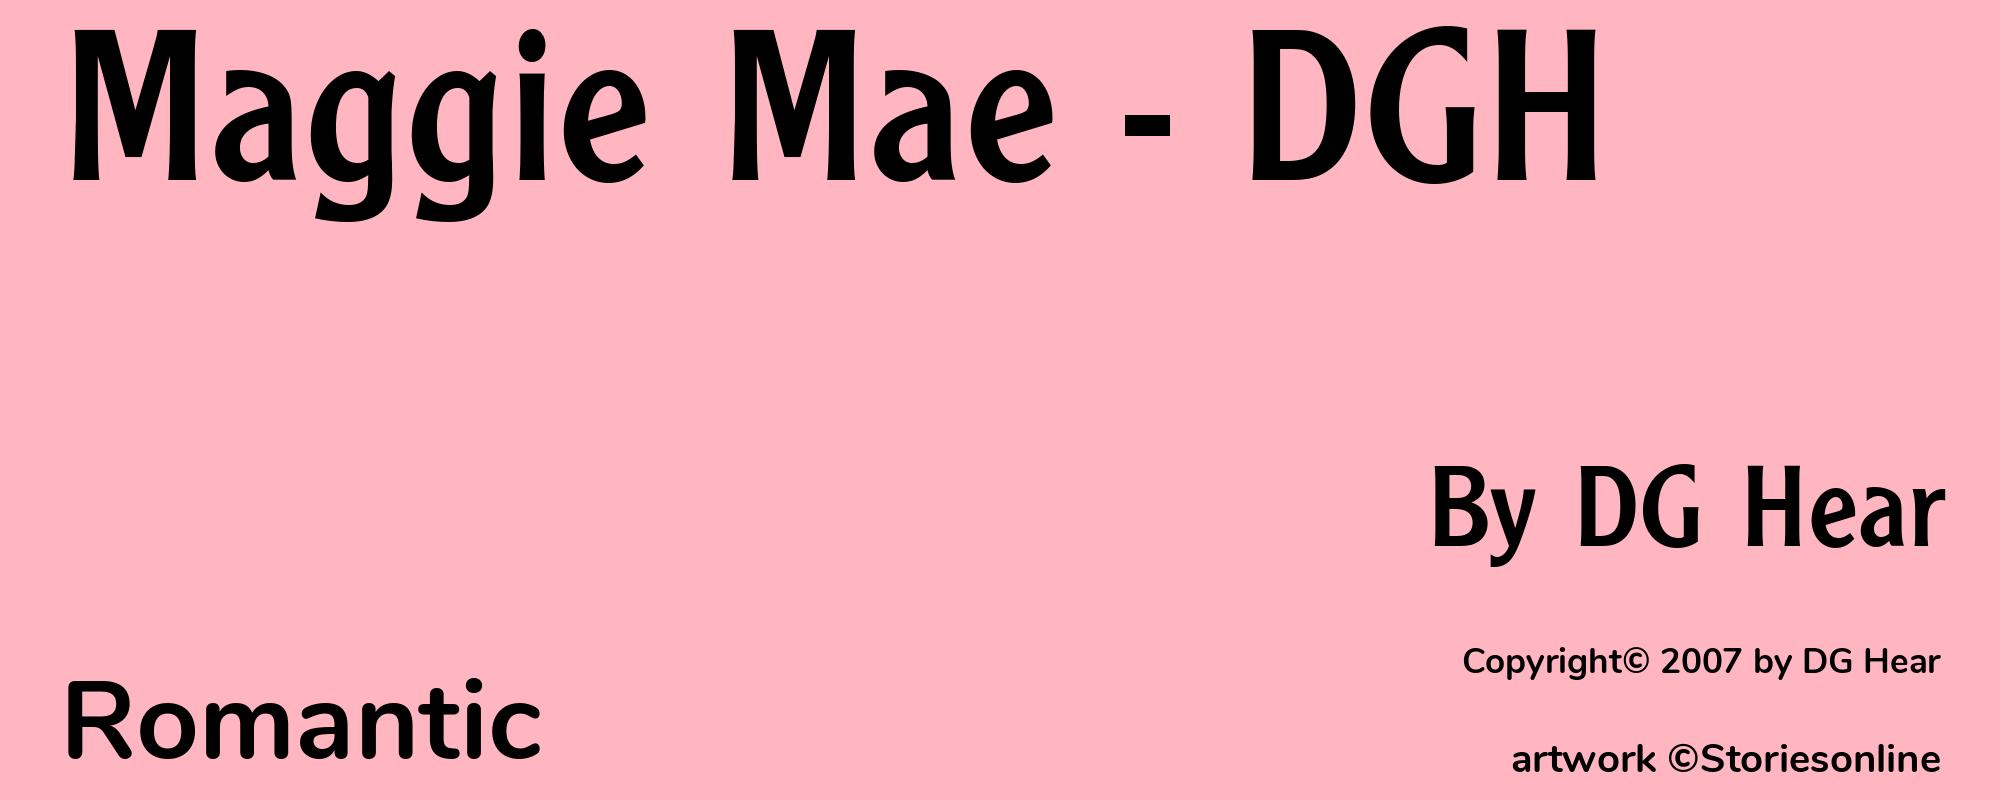 Maggie Mae - DGH - Cover